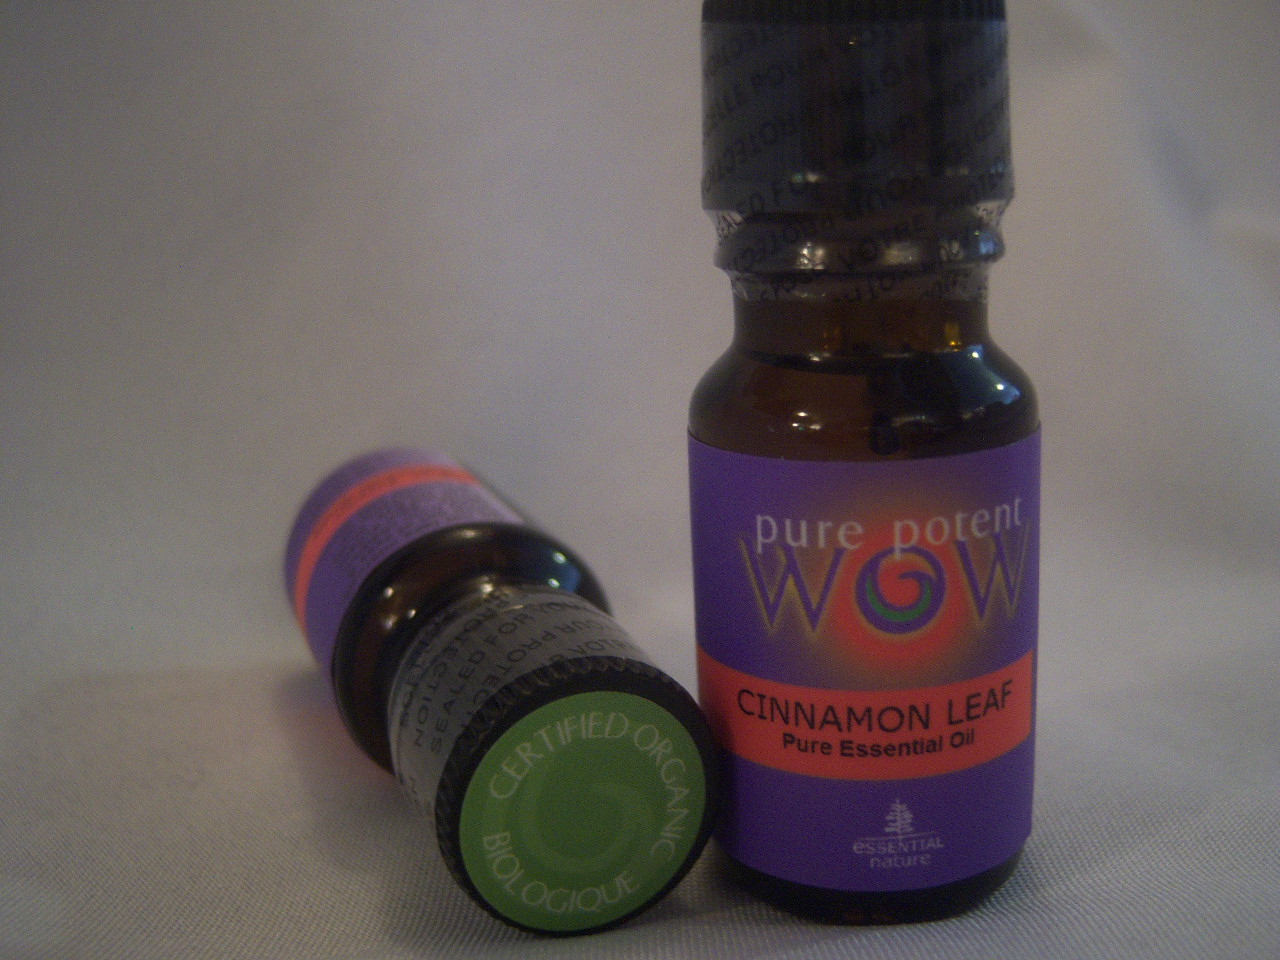 Cinnamon Leaf essential oil